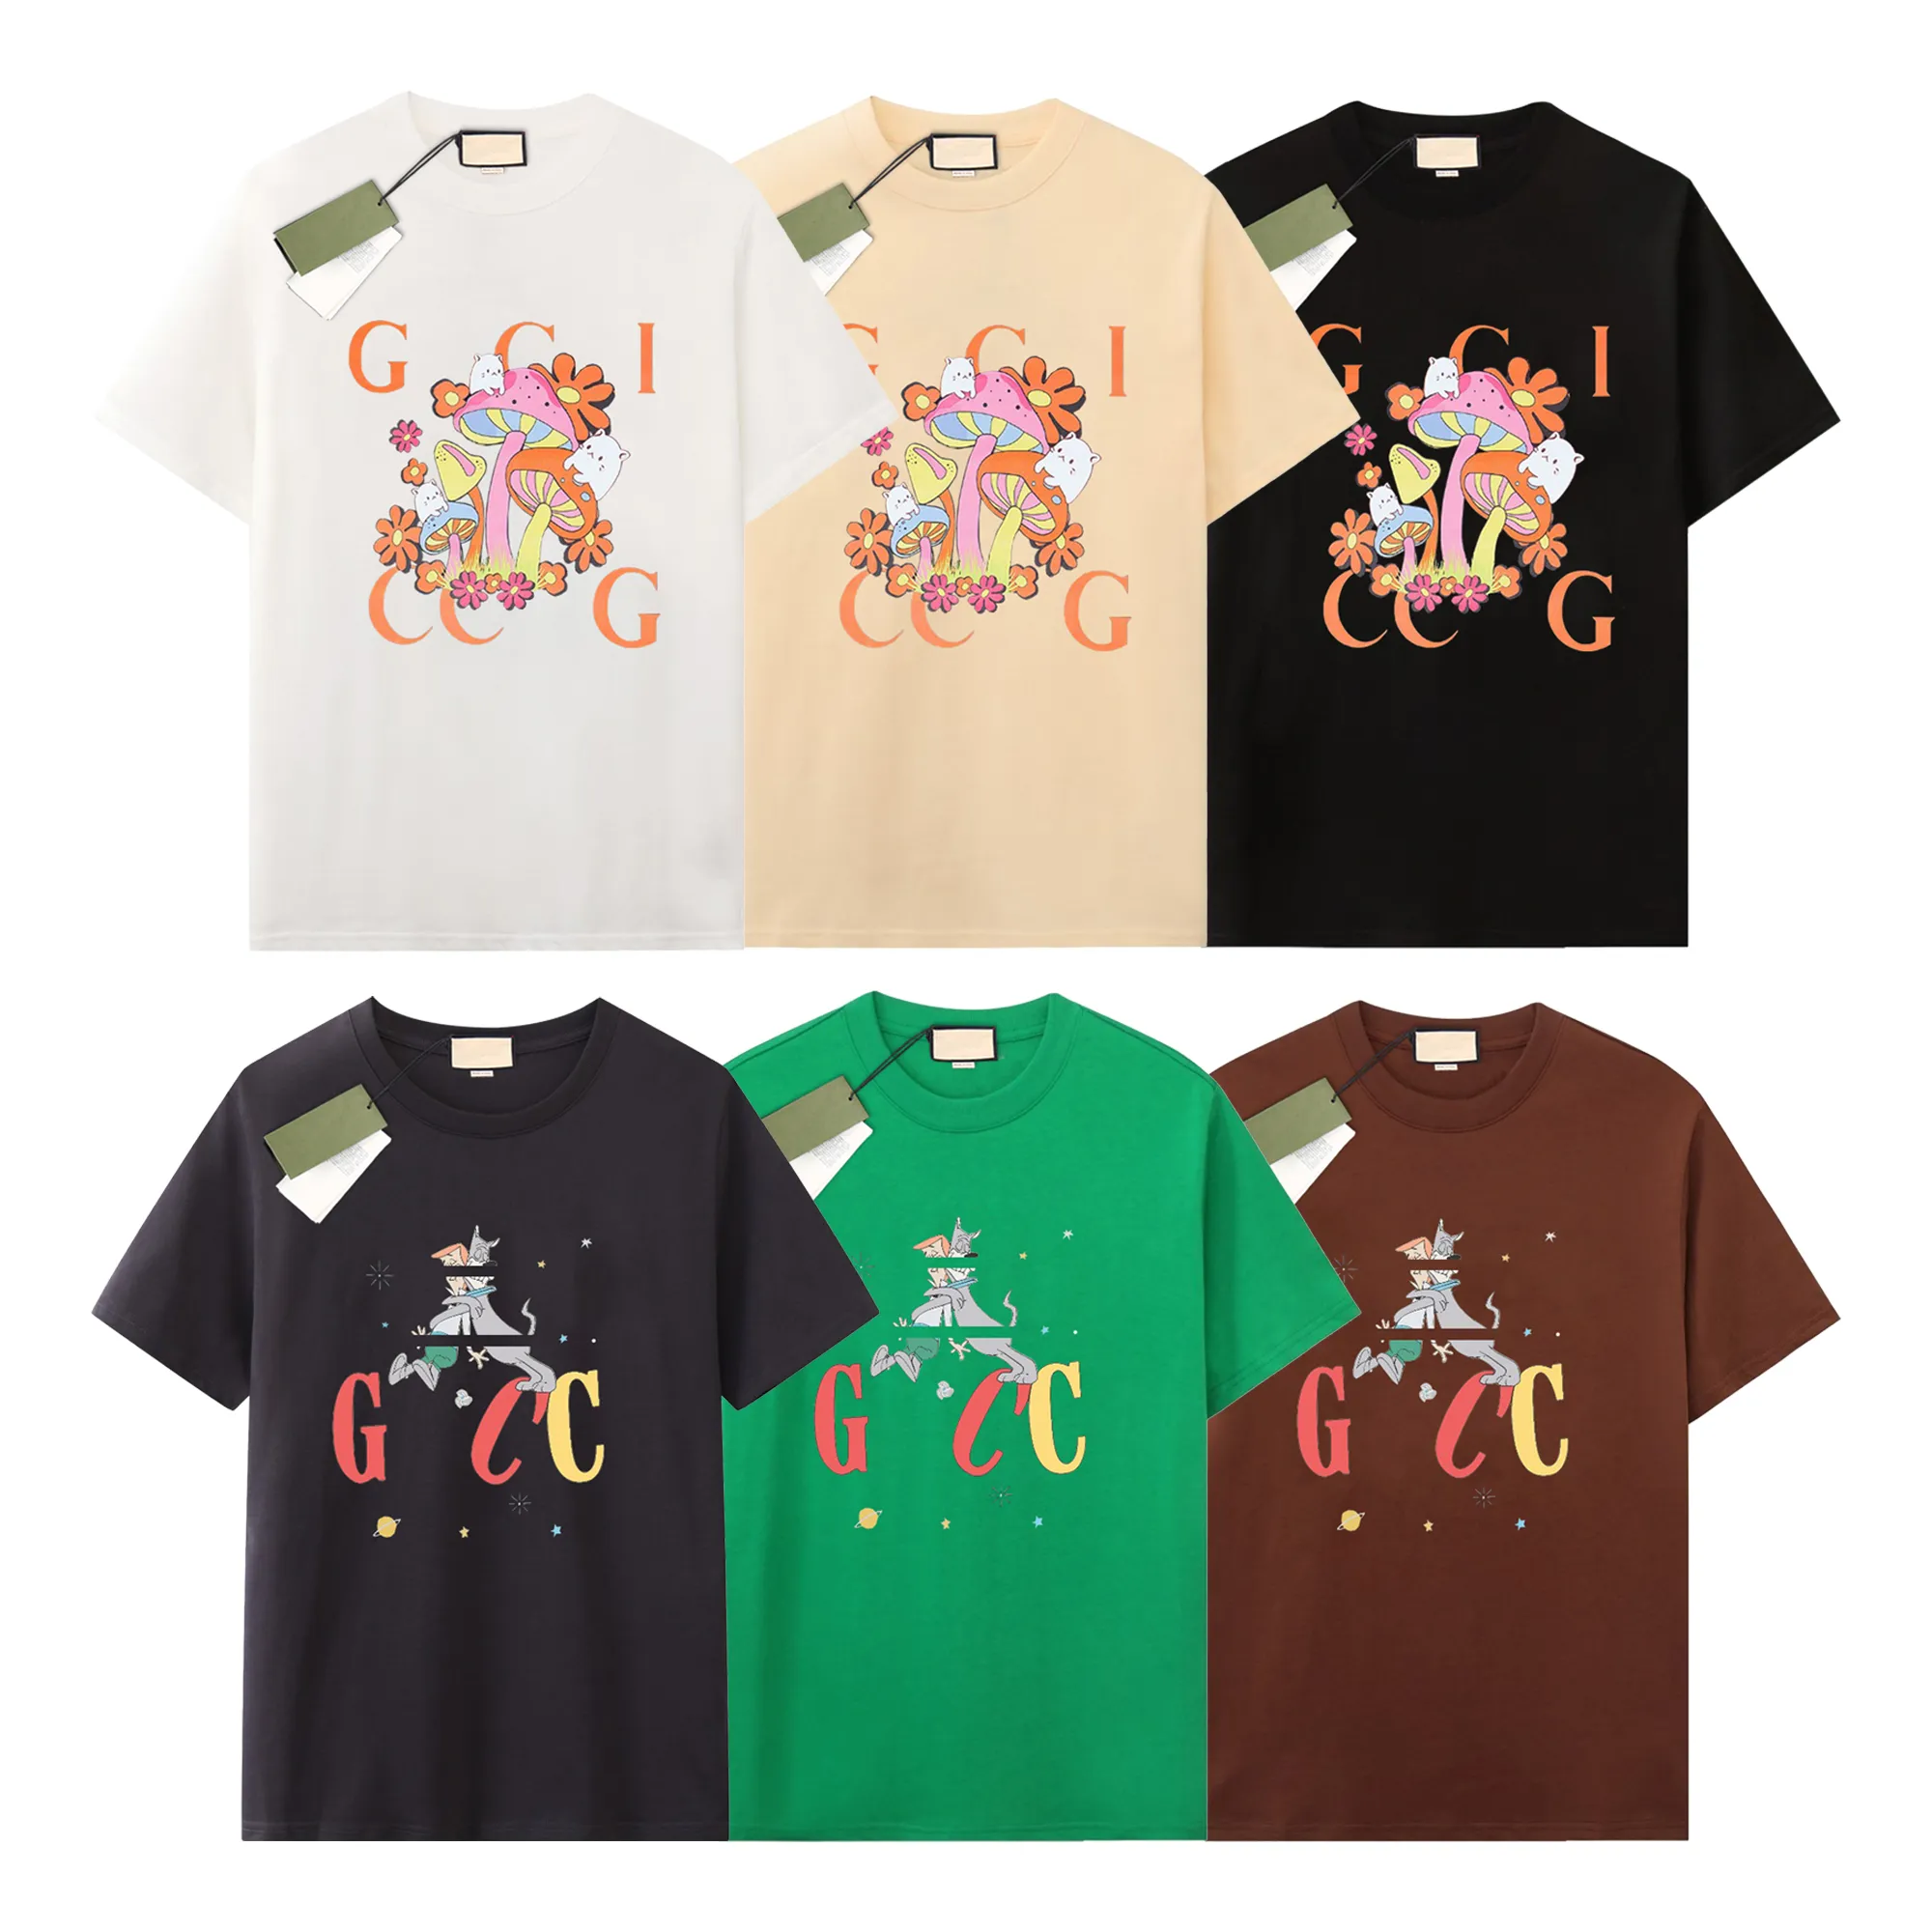 Mens Designer T-shirt Verão GU Camisas Marca de Luxo Camisetas Mens Mulheres Manga Curta Hip Hop Streetwear Tops Shorts Roupas Tees Roupas G-99 Tamanho XS-XL